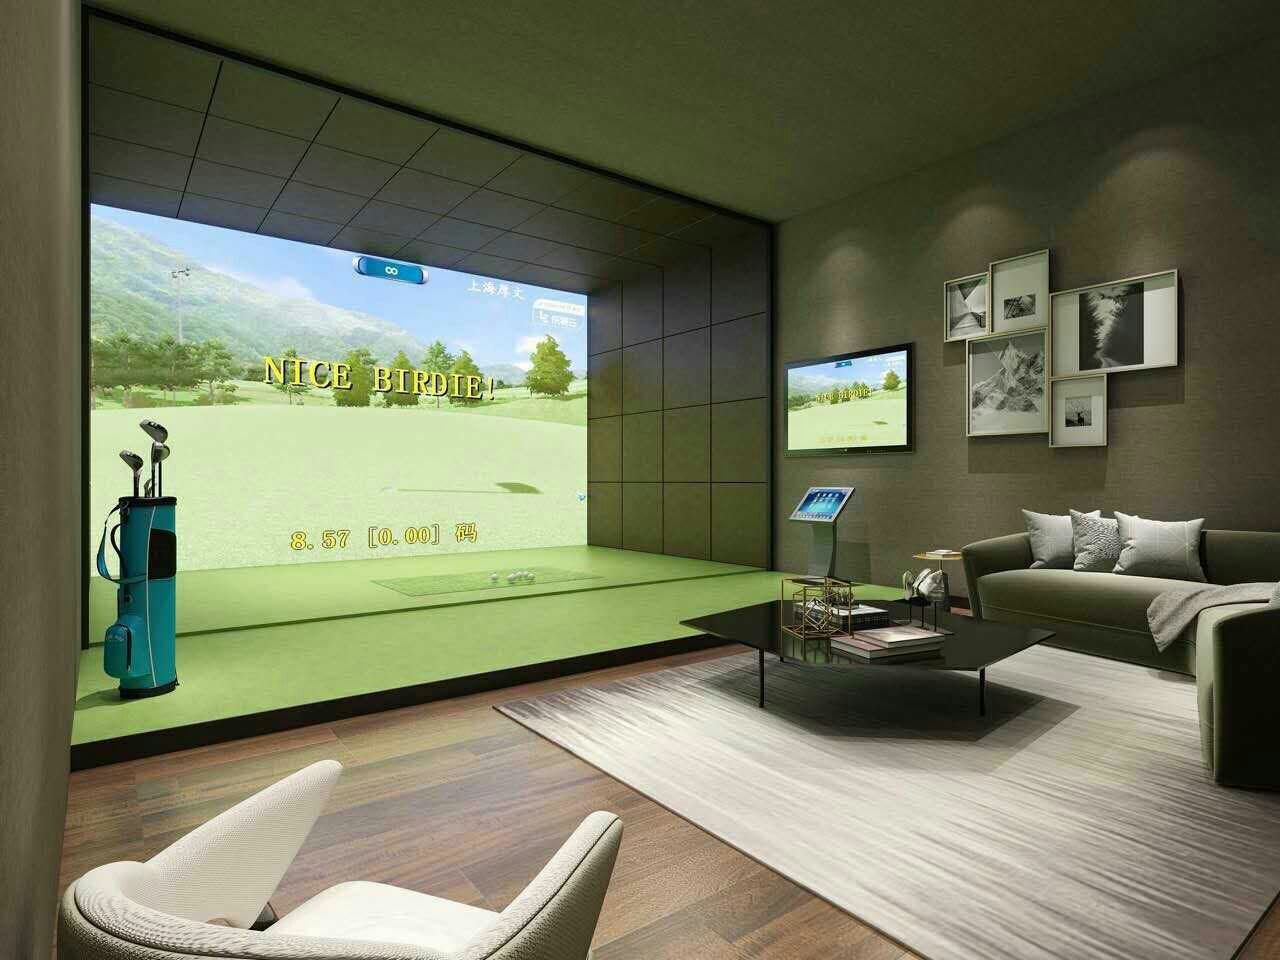 大连室内高尔夫模拟器厂家-瑞澎智能科技-大连室内高尔夫模拟器